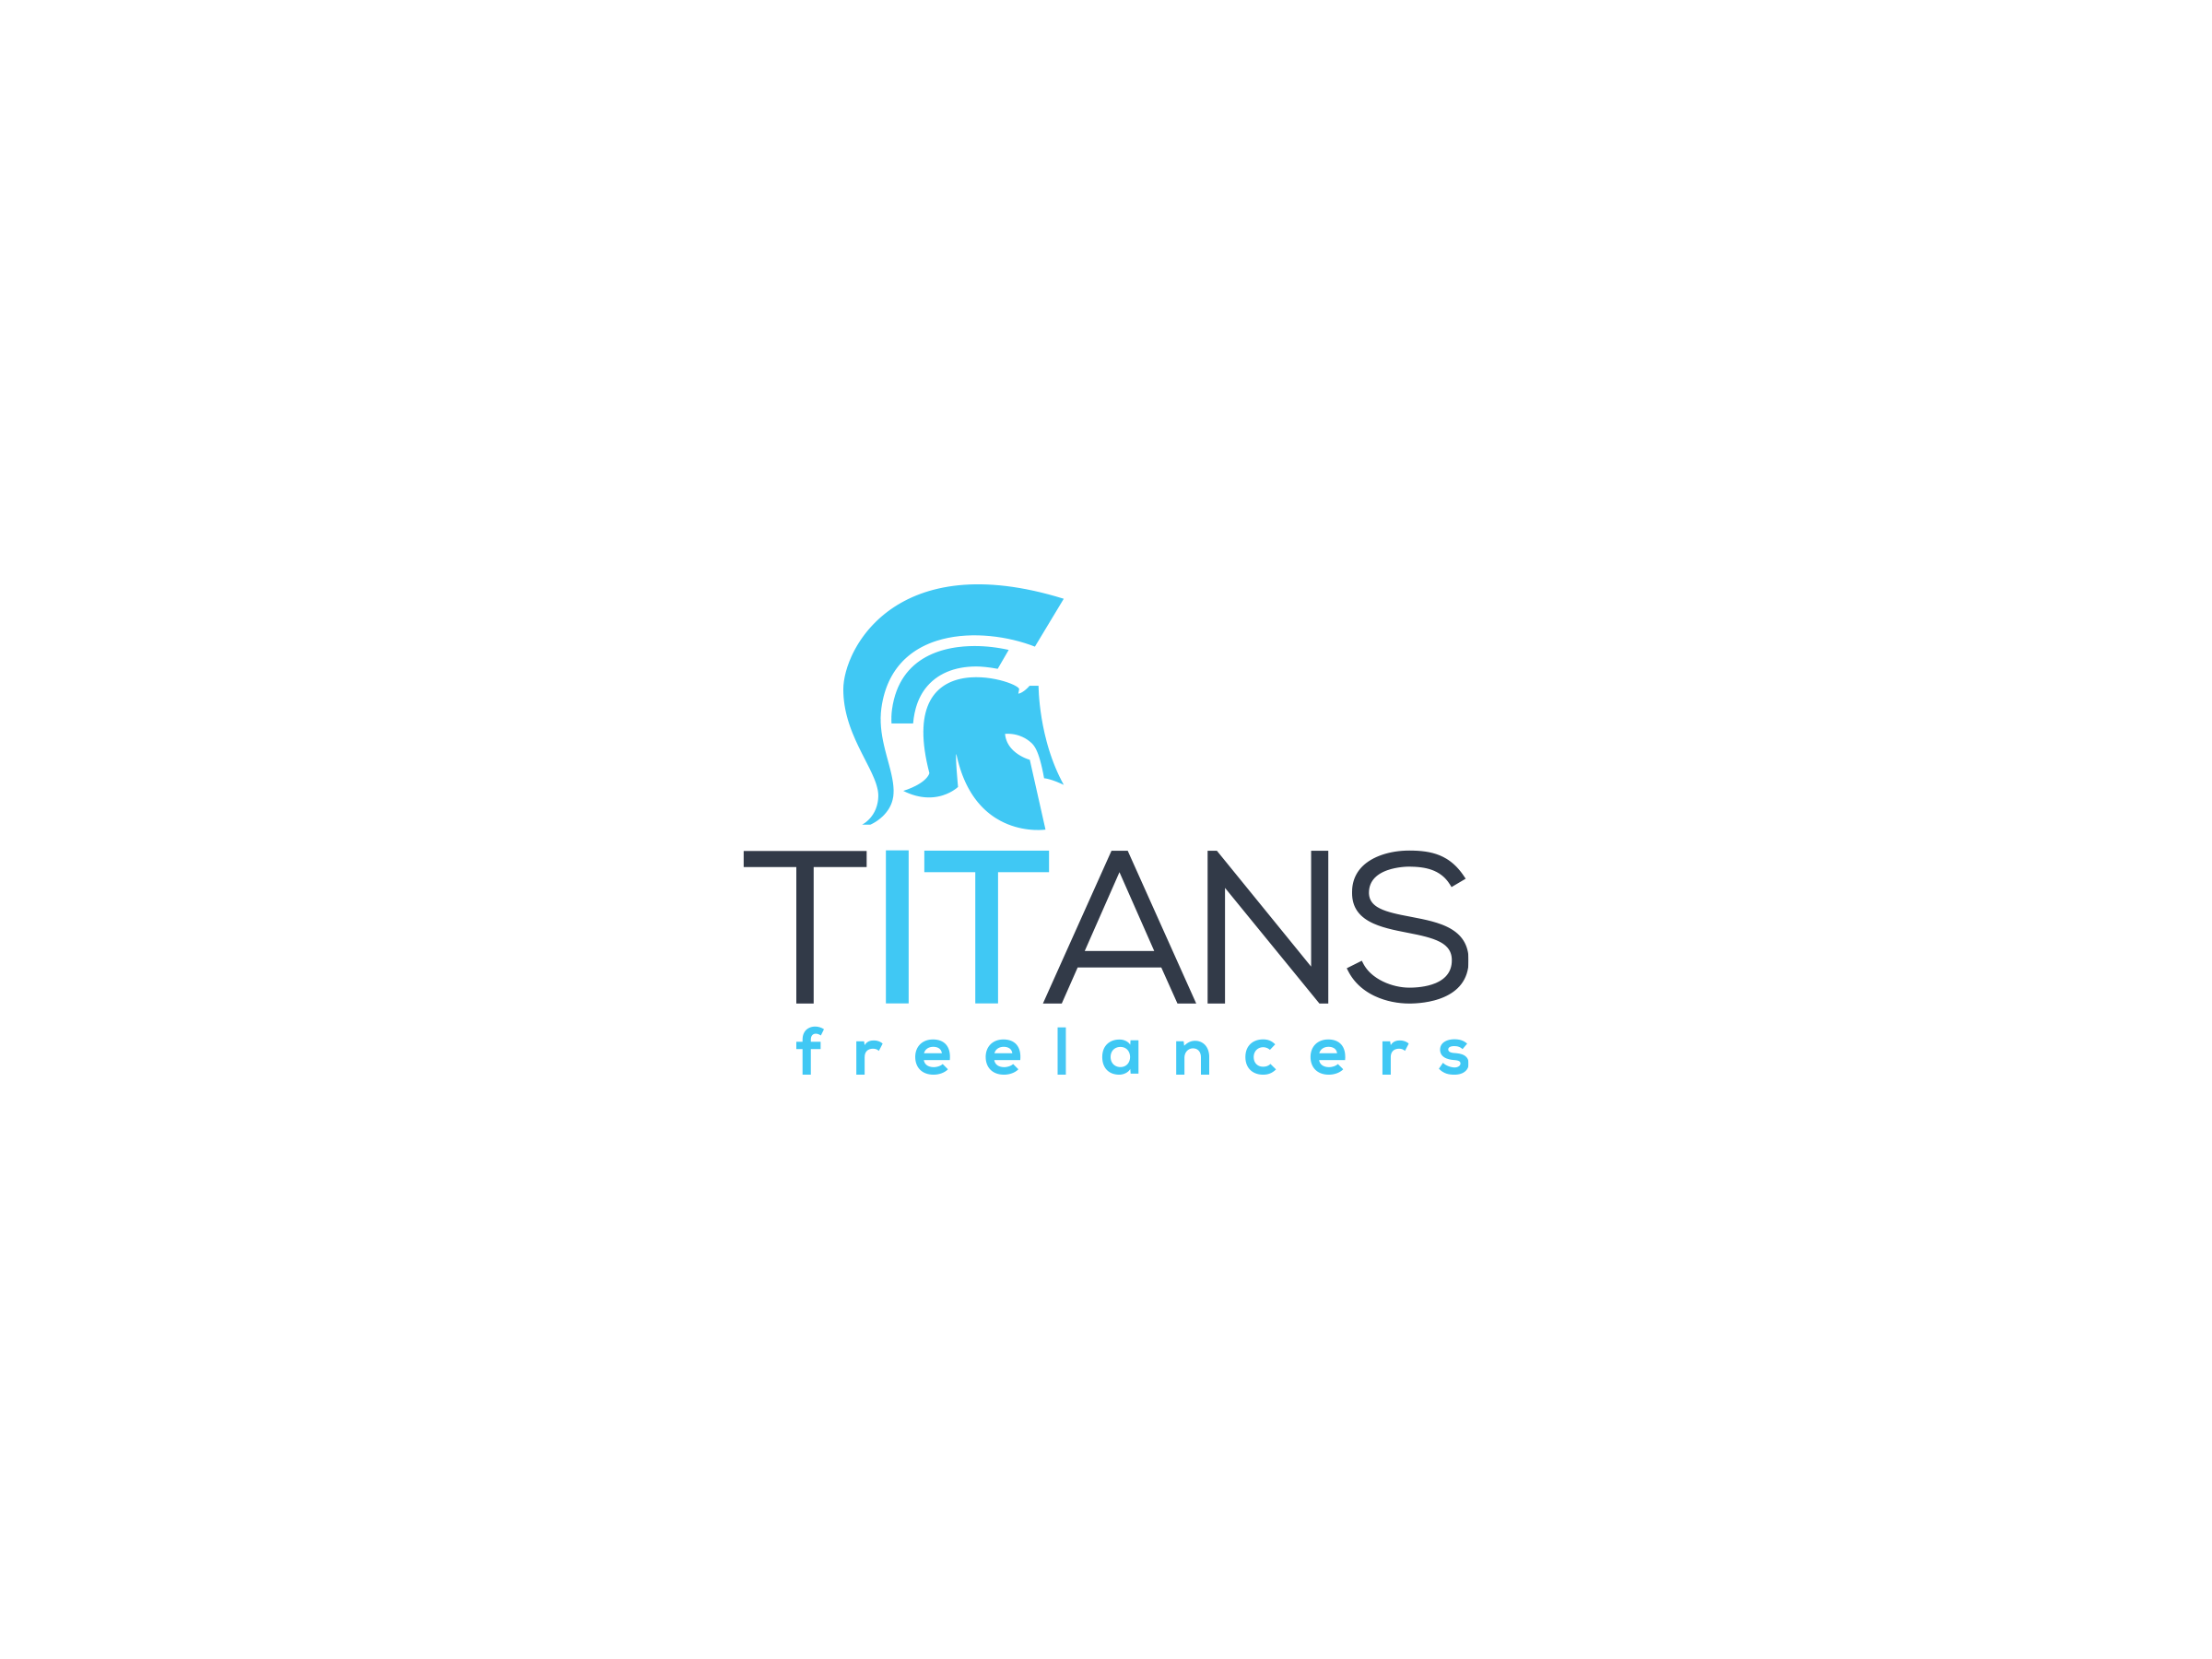 TITANS freelancers